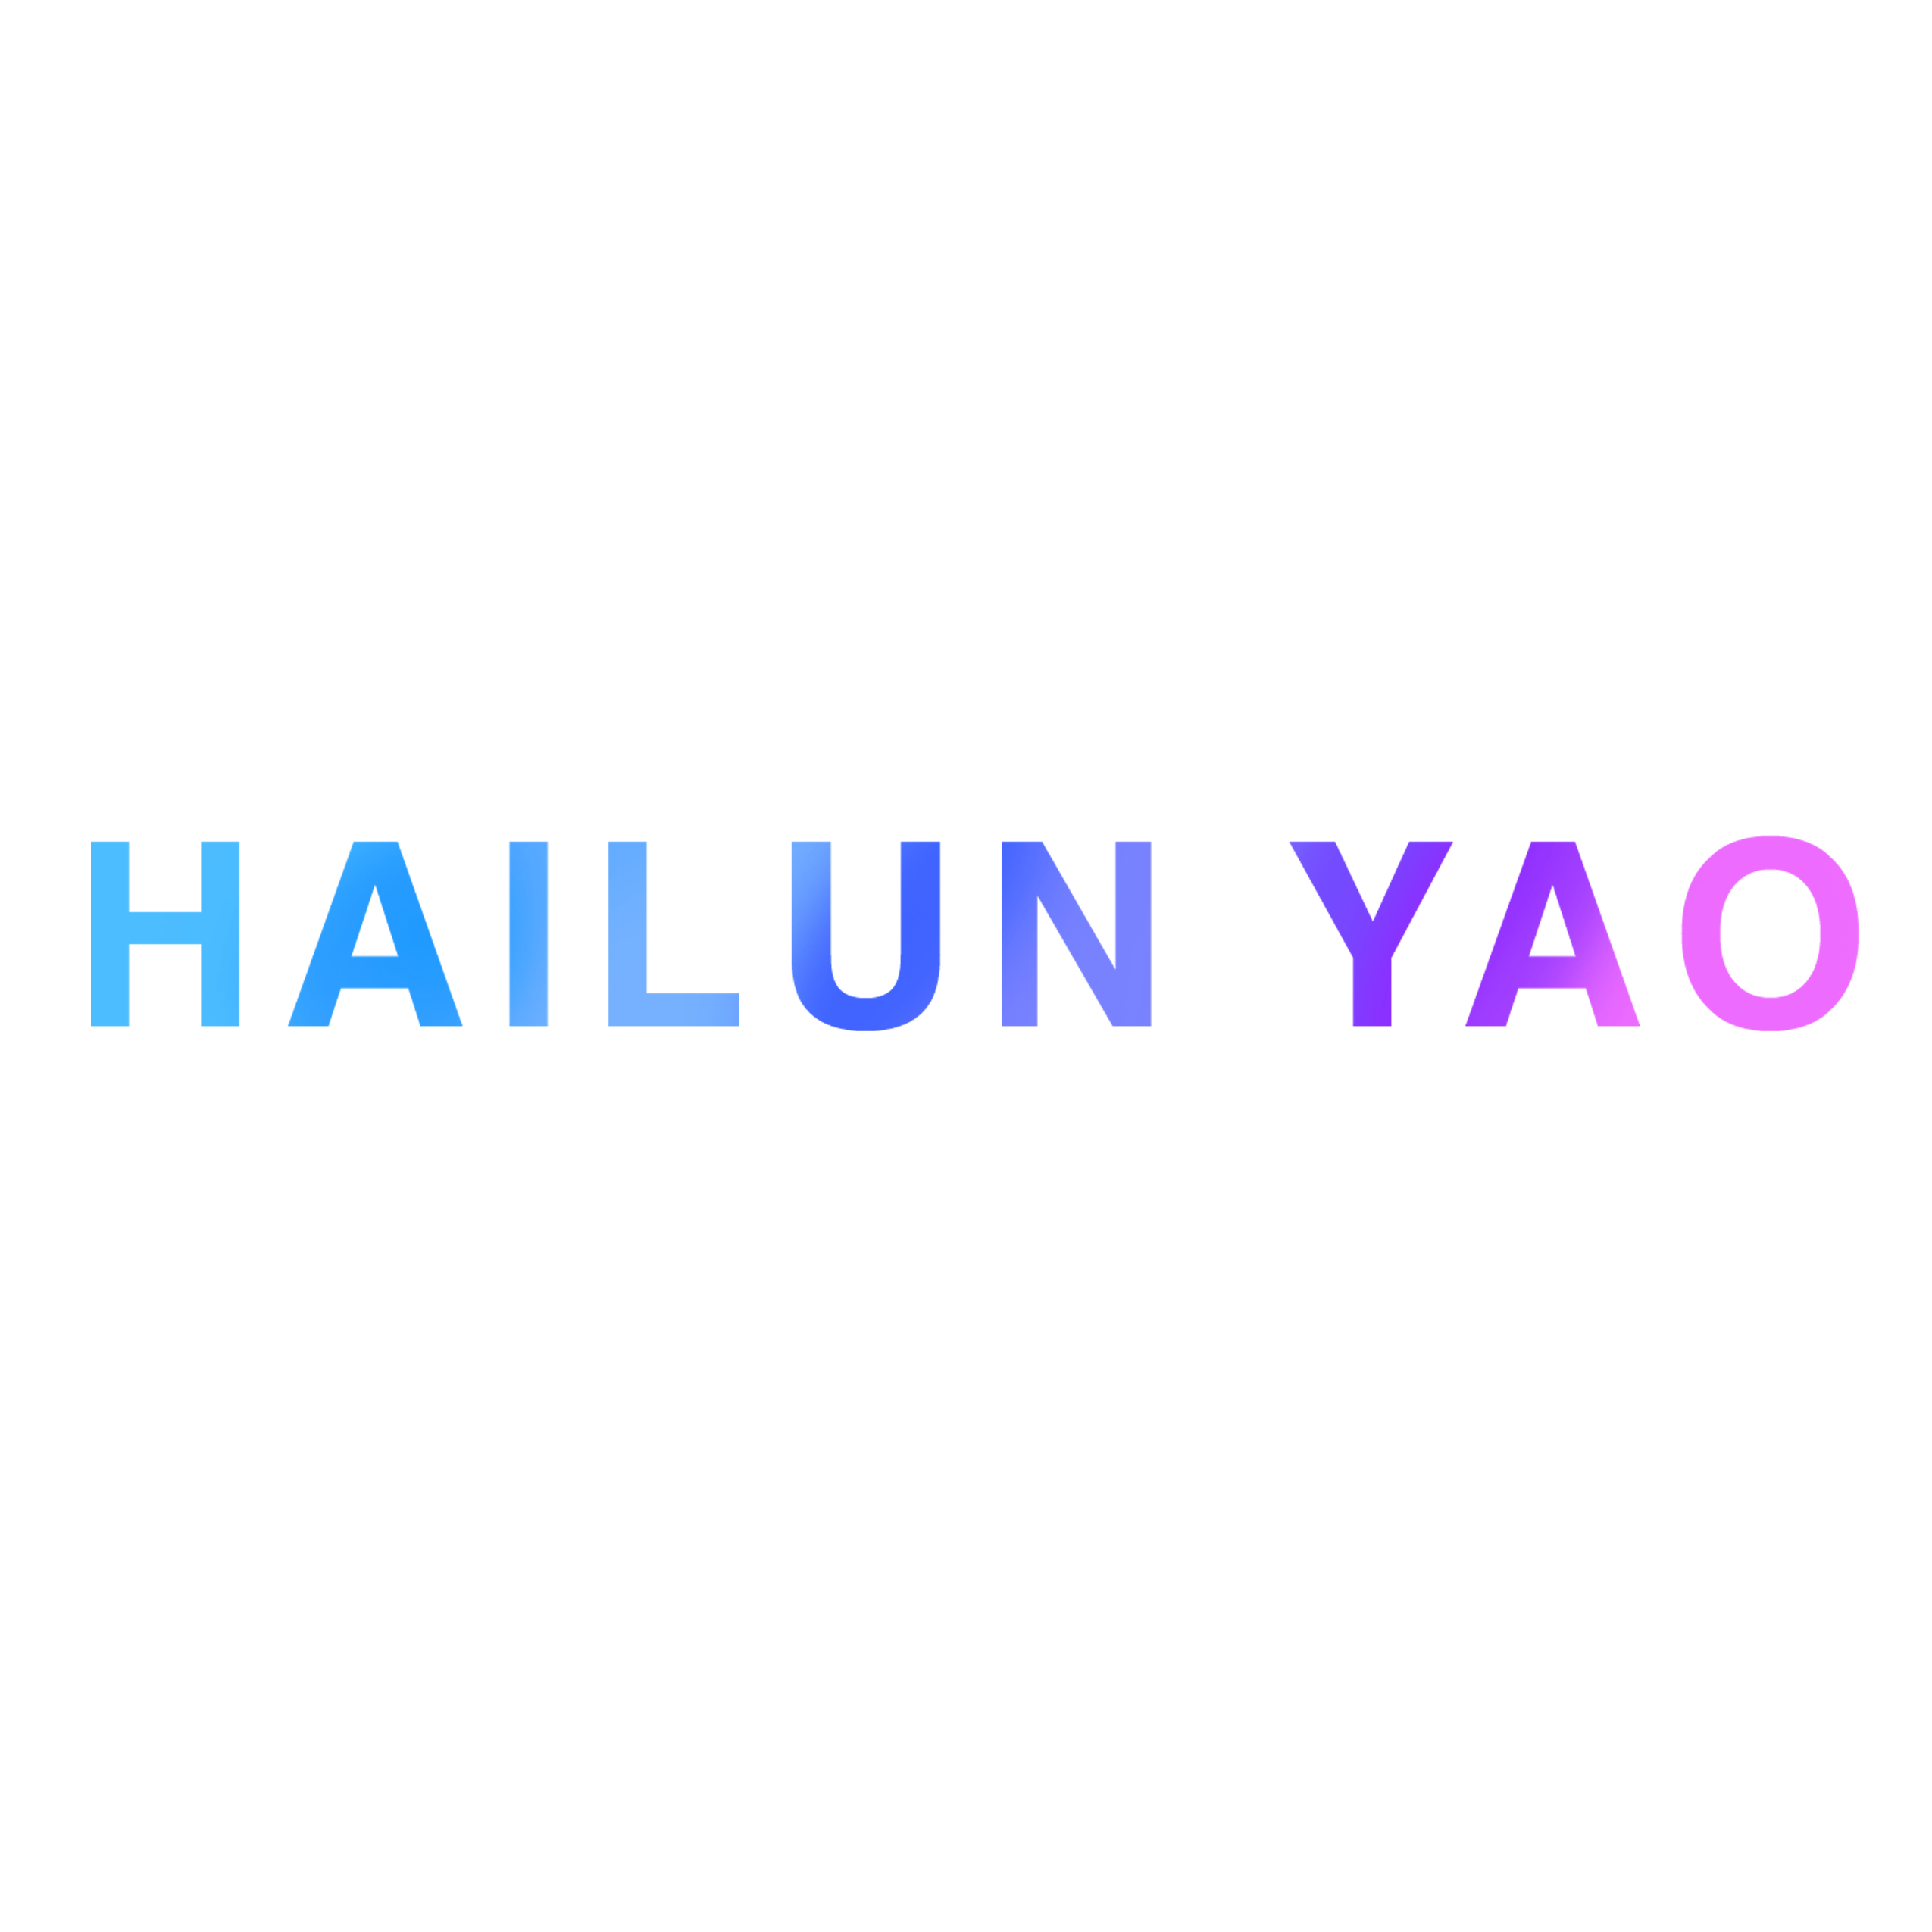 Hailun Yao